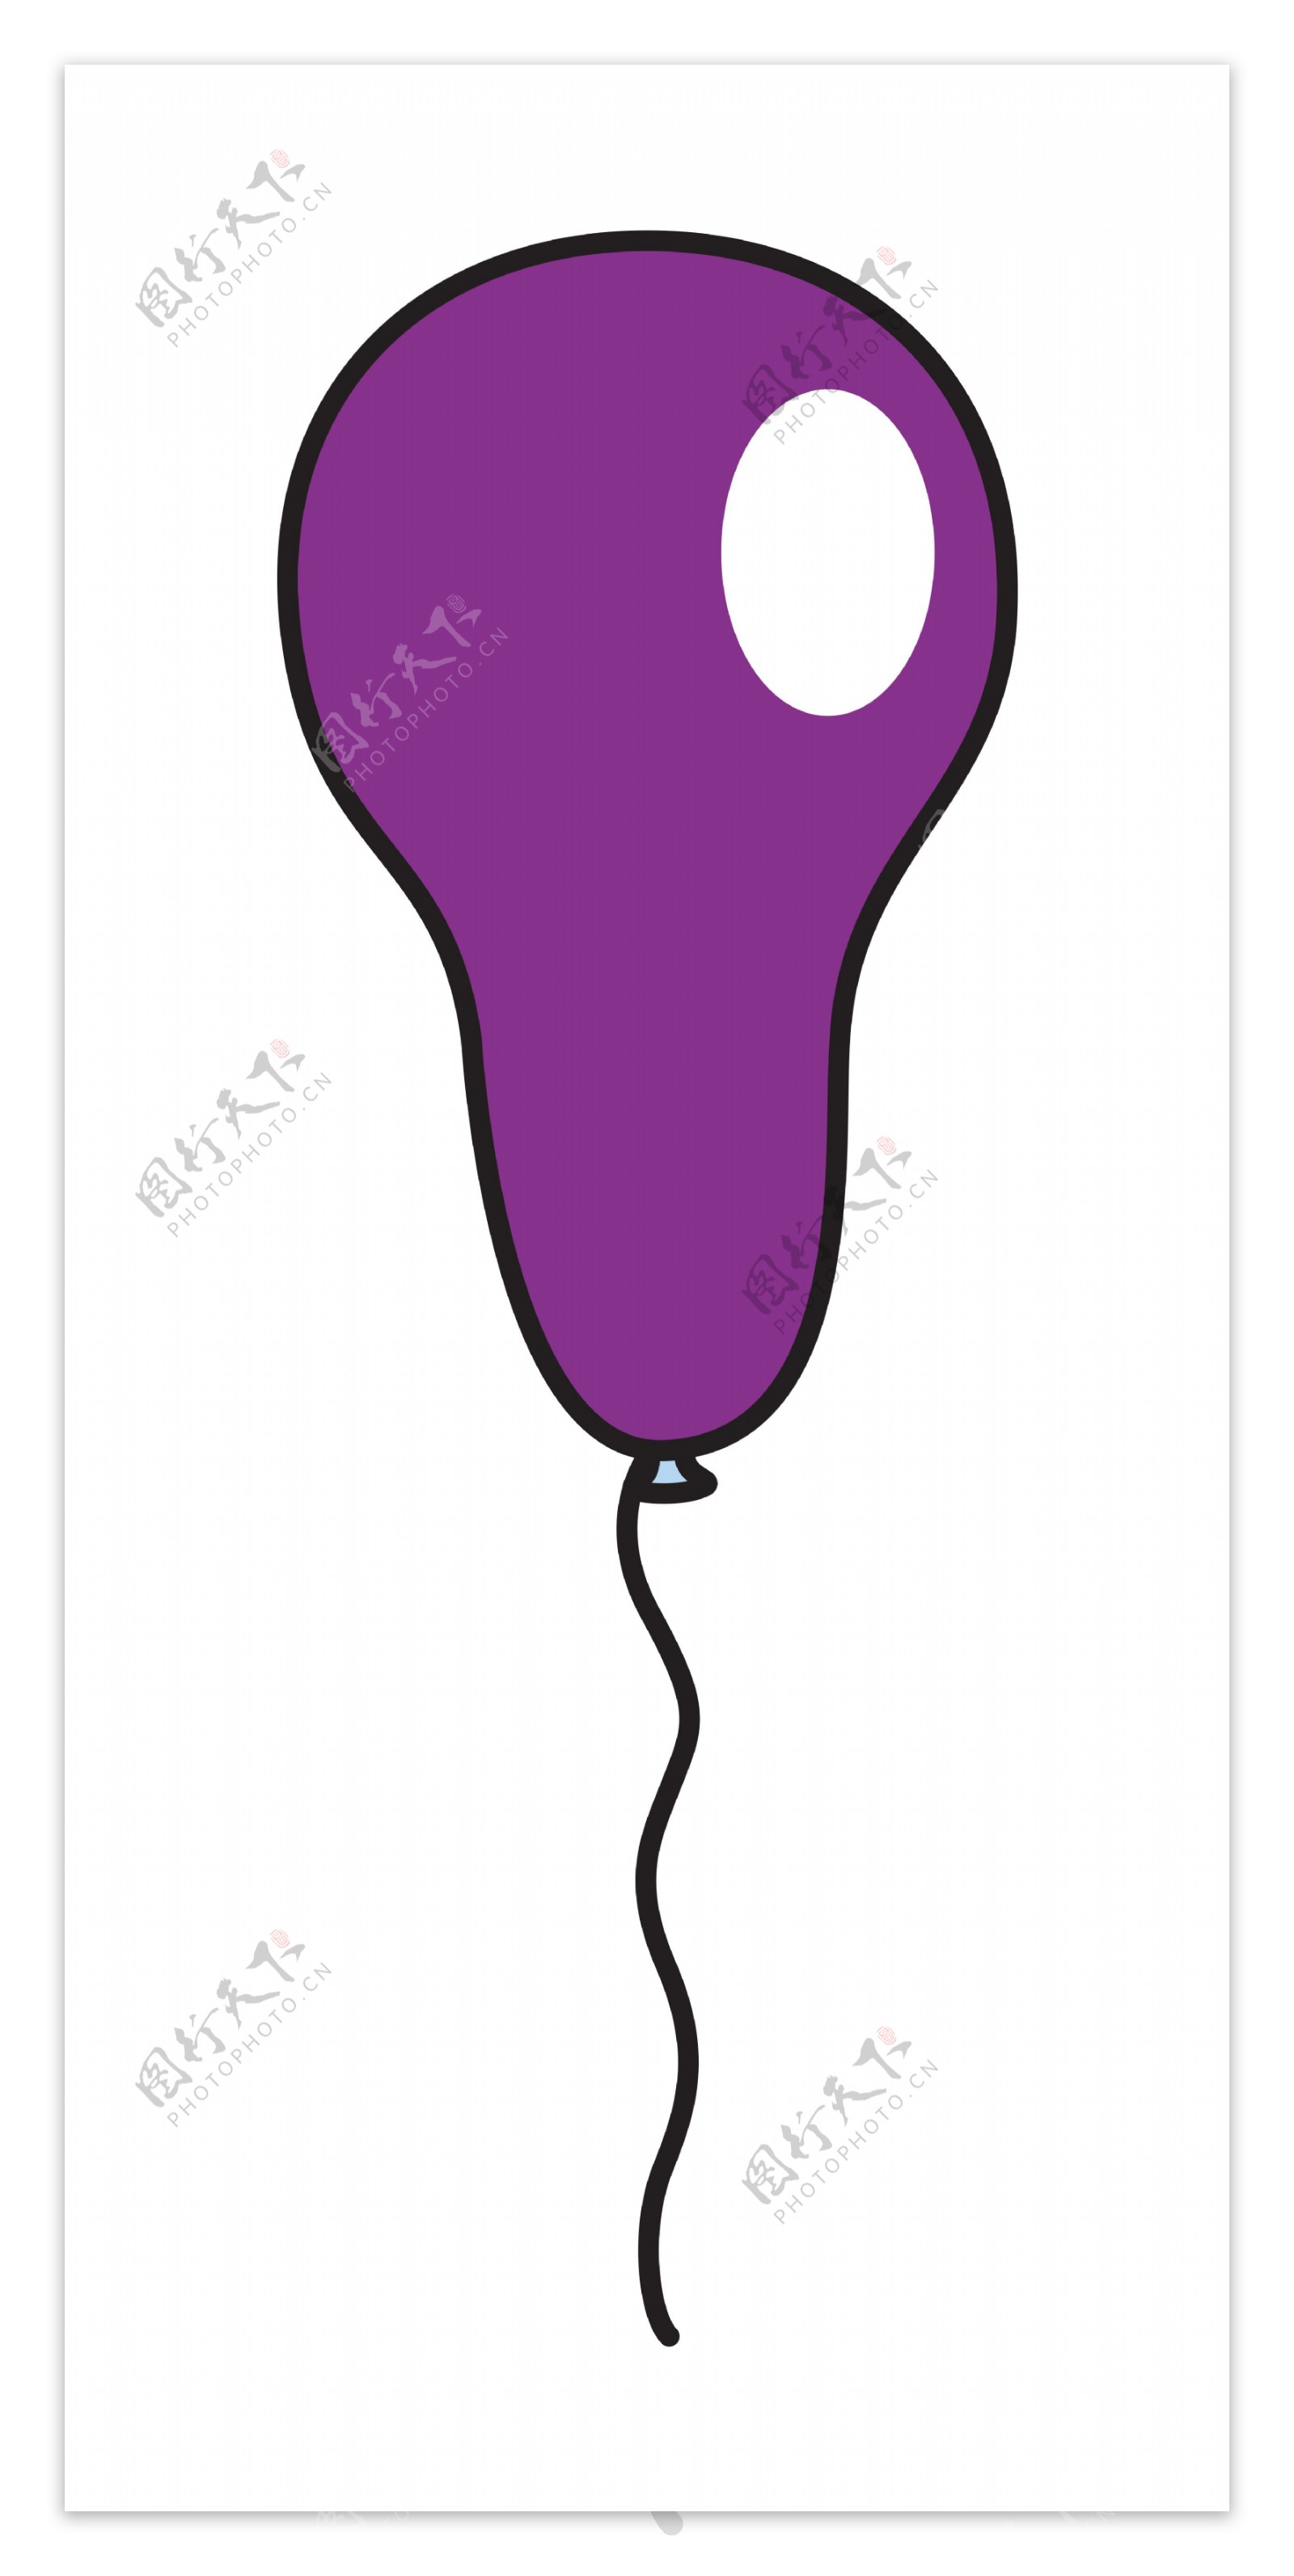 紫色的气球